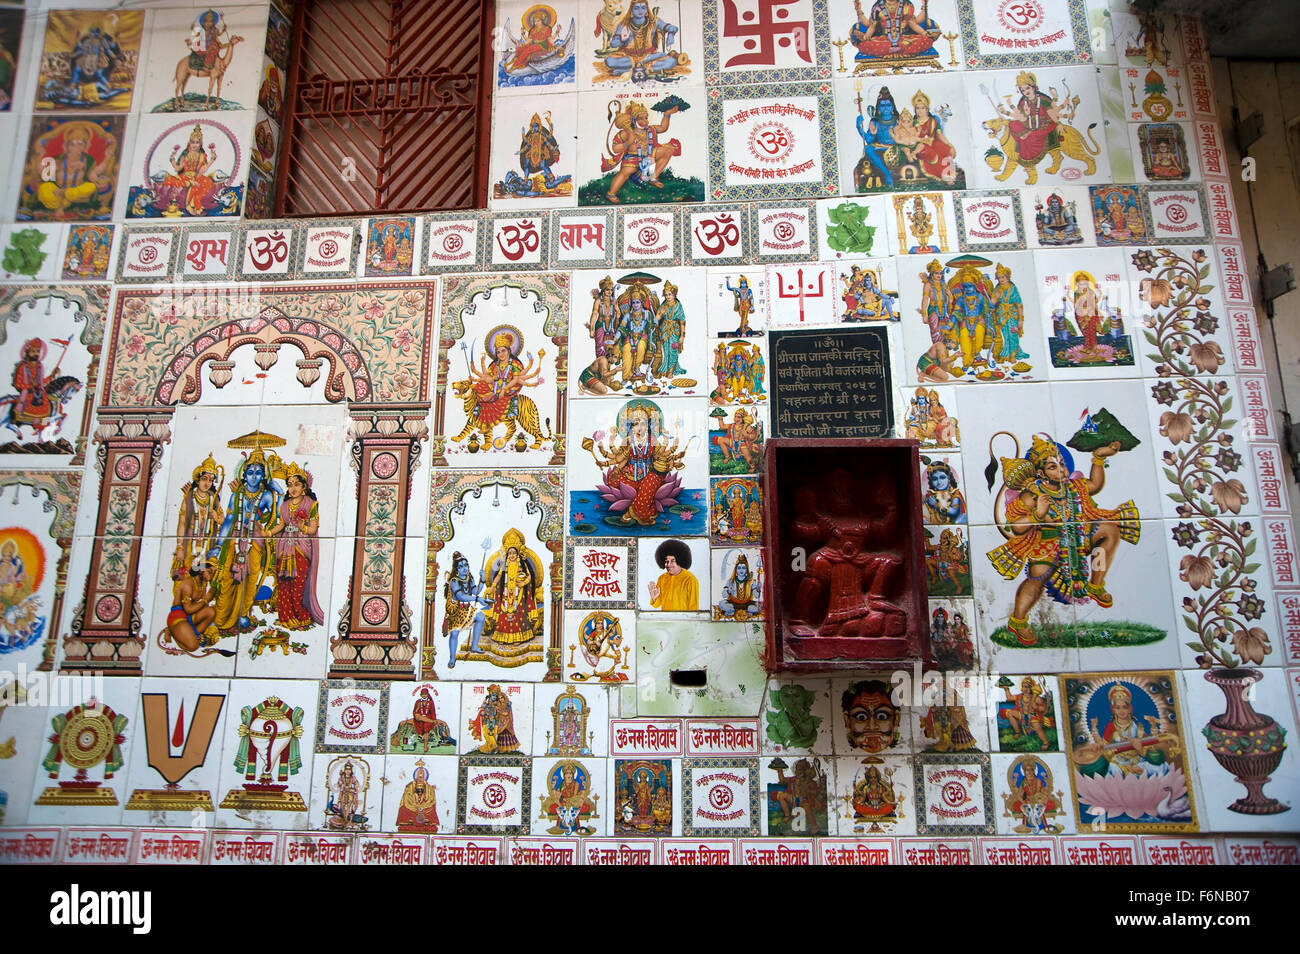 Wandmalereien von Gott und Göttin, pakka mahal, varanasi, uttar pradesh, indien, asien Stockfoto